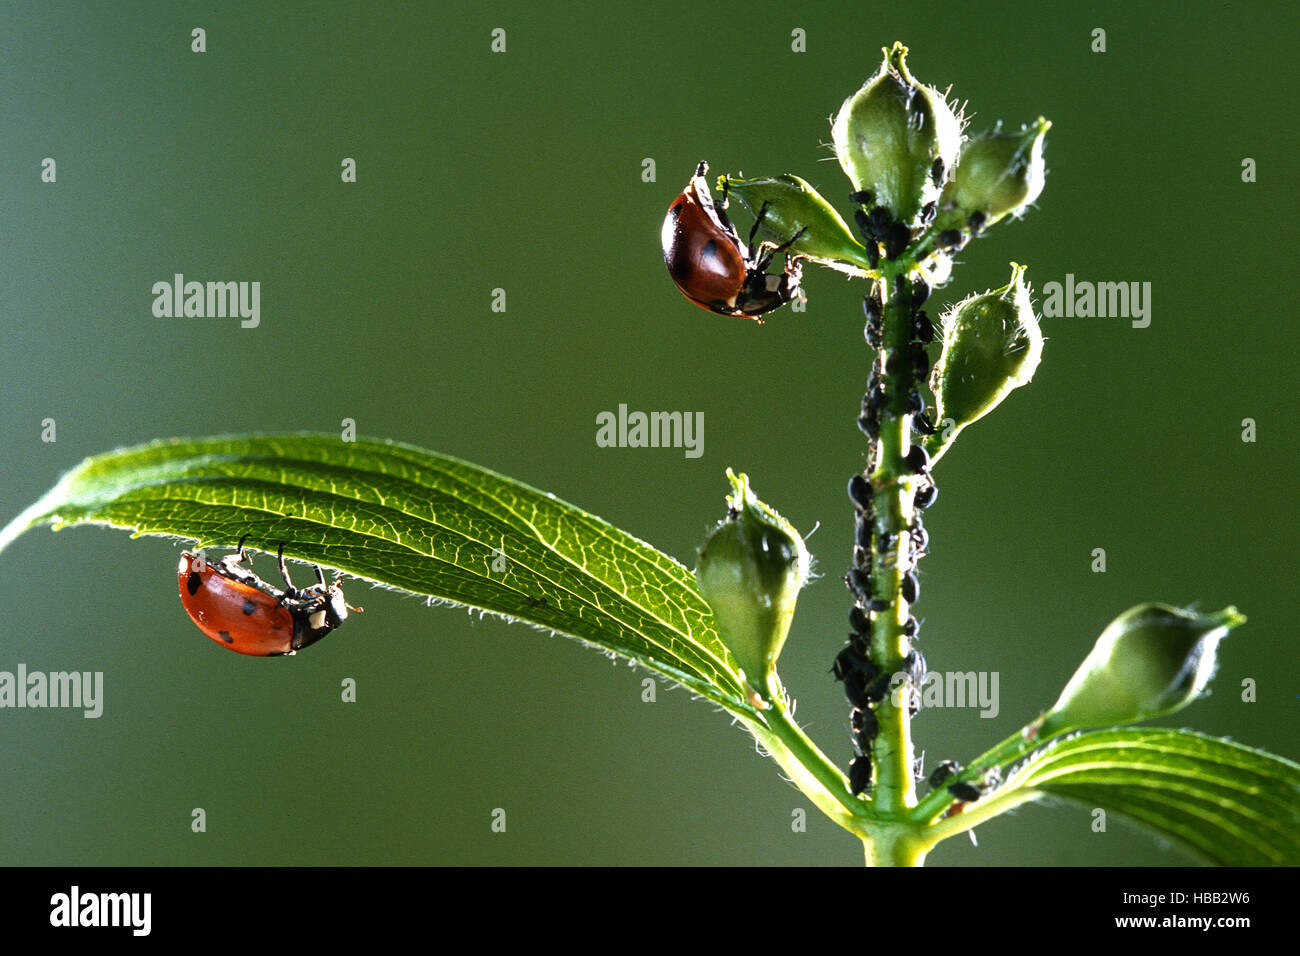 Ladybug, seven-spot ladybug Stock Photo